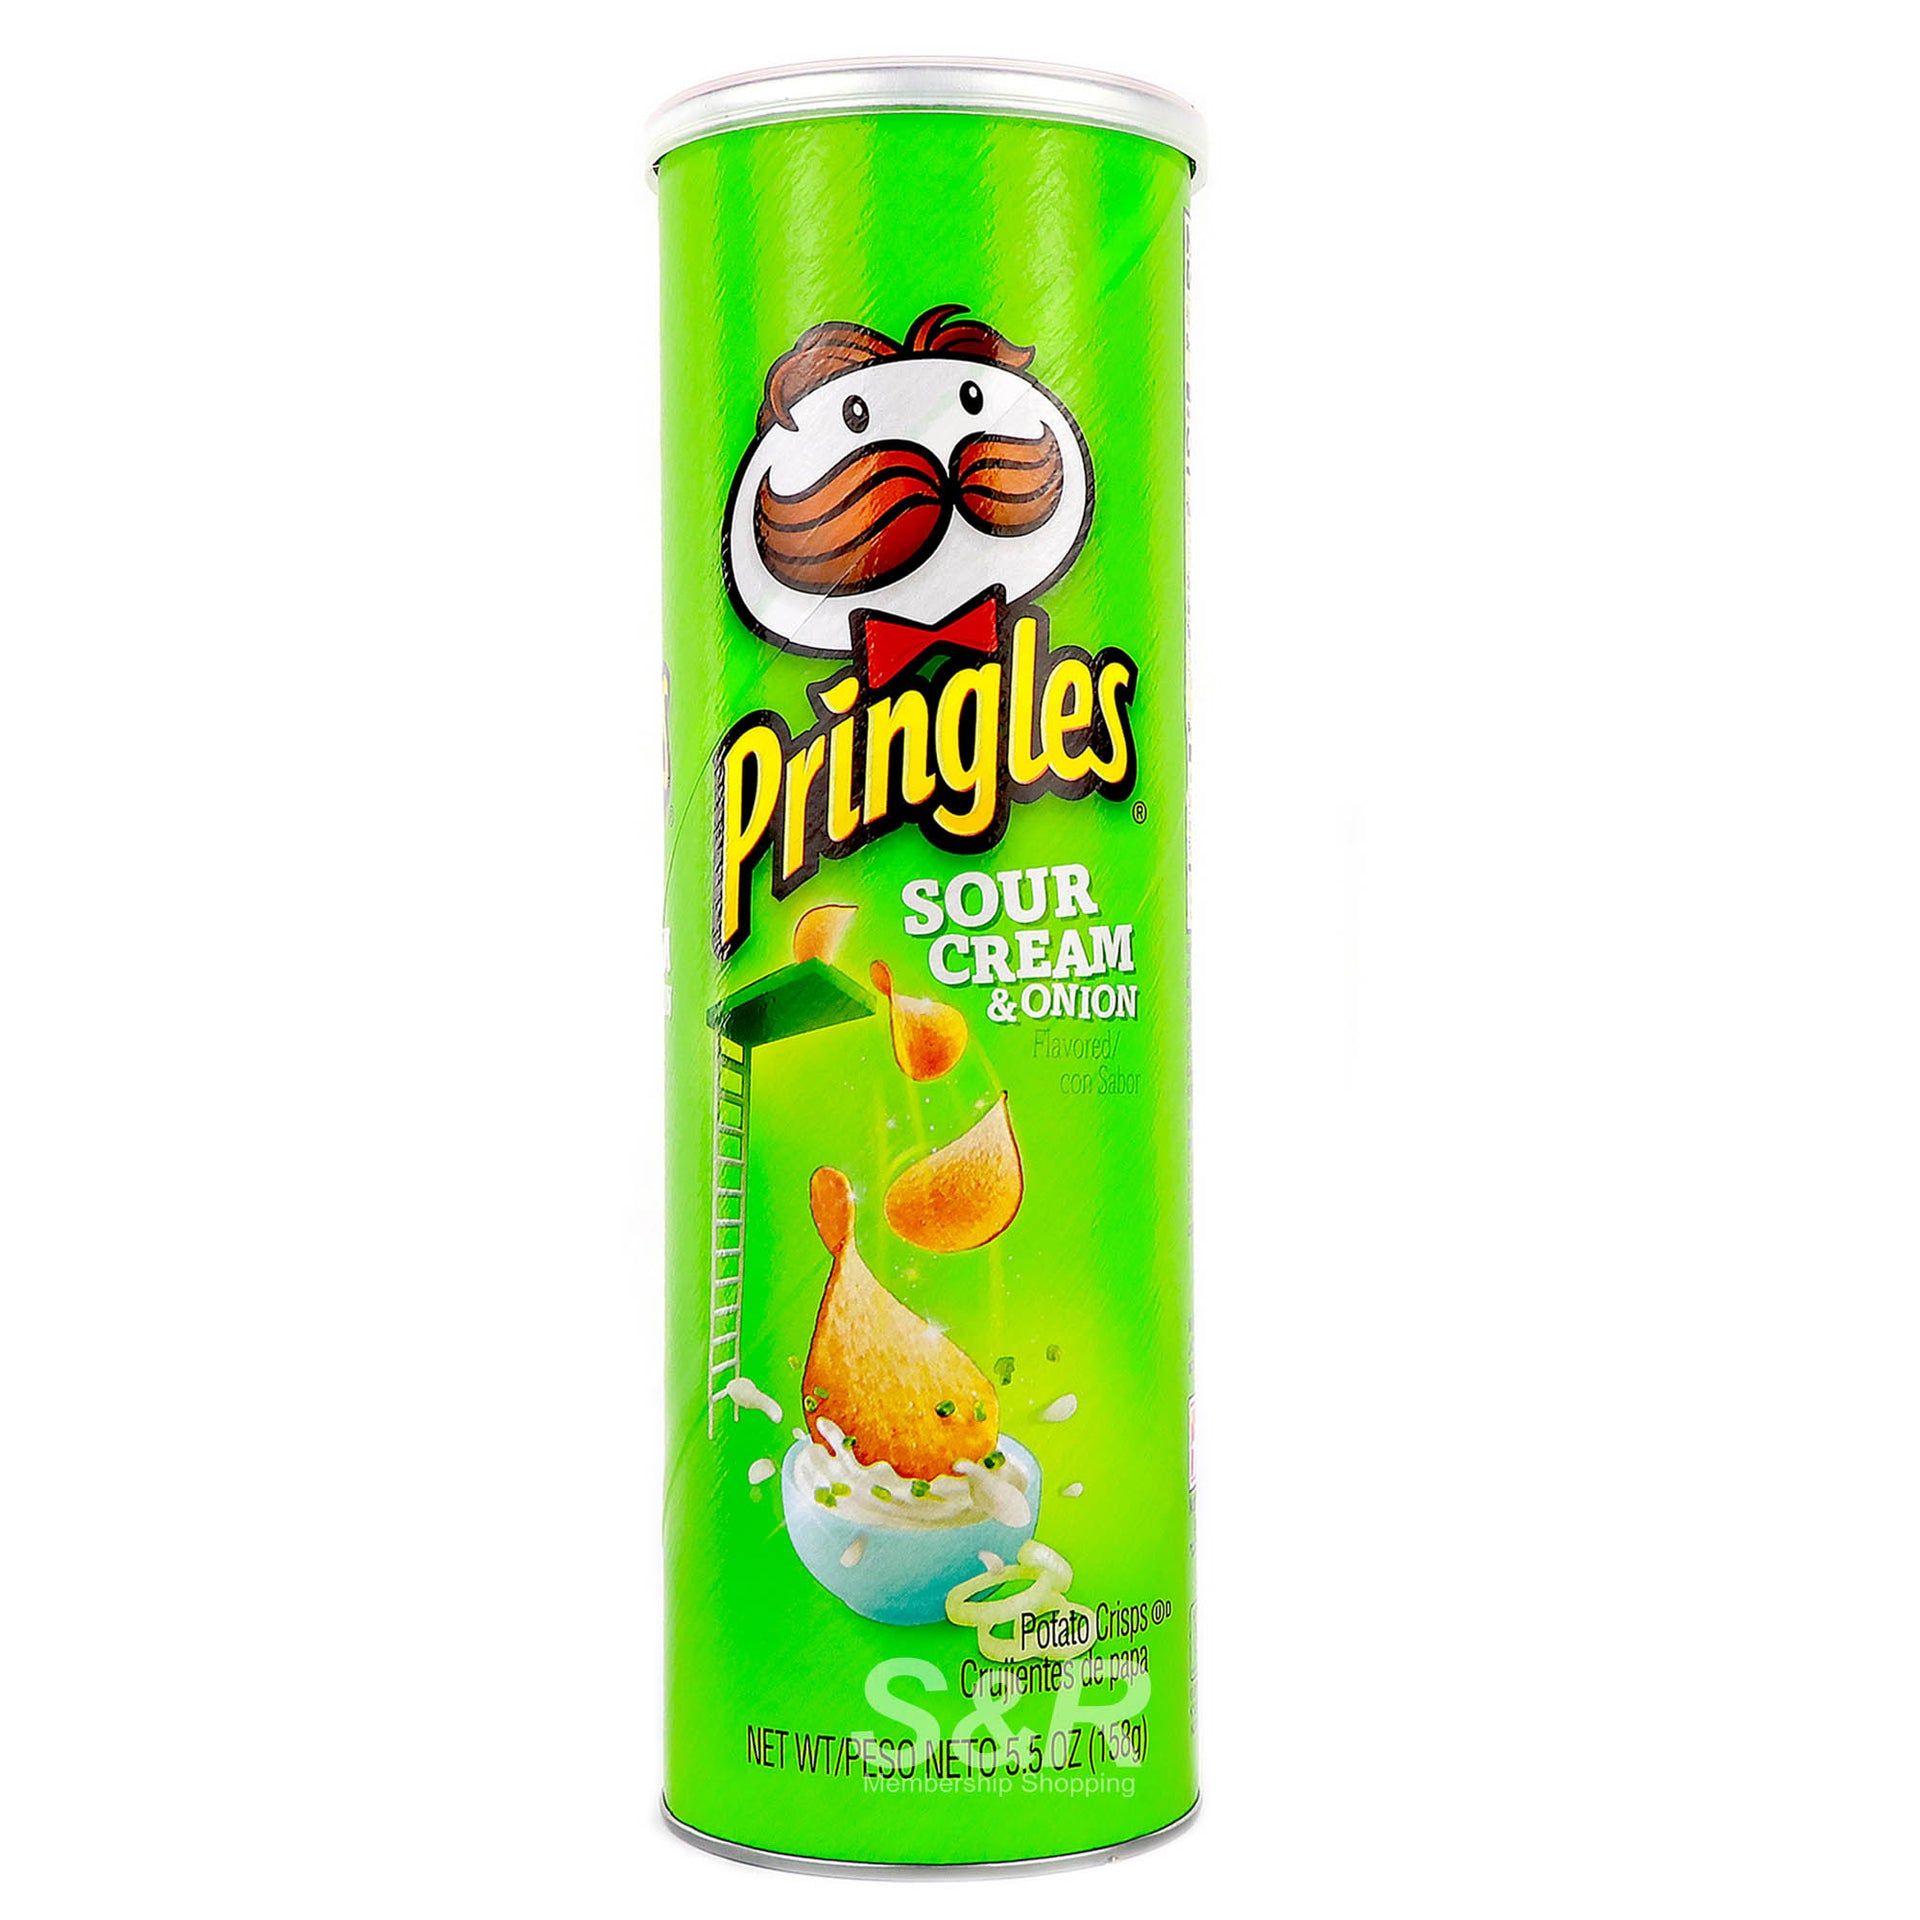 Pringles Sour Cream & Onion 158g (USA)